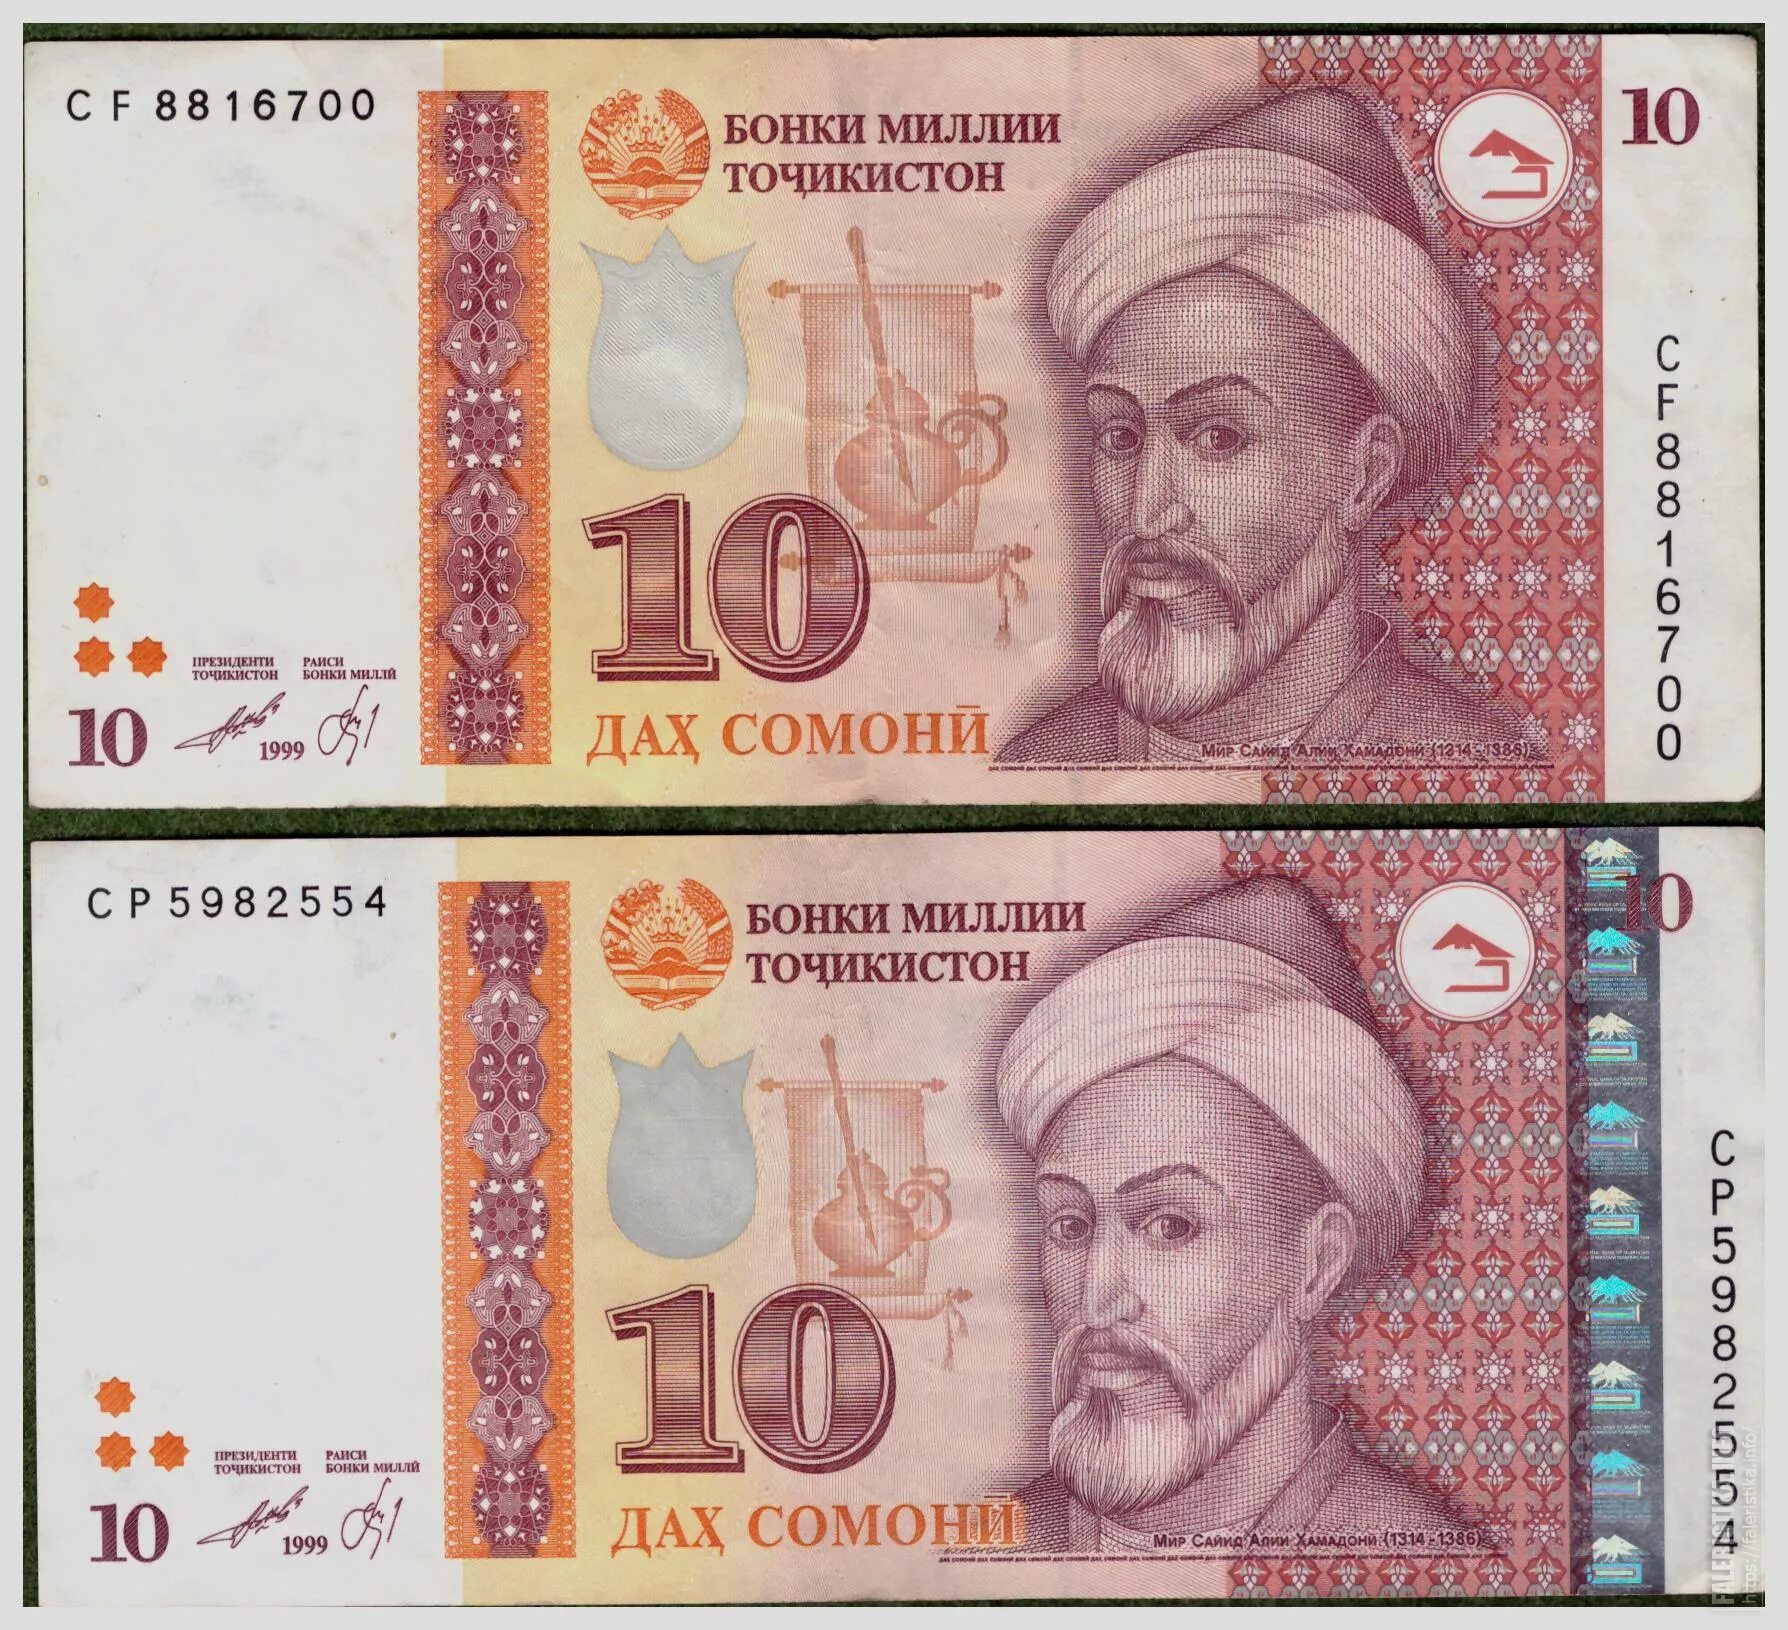 Деньги Таджикистана 500 Сомони. Деньги Таджикистана 10 Сомони. Купюра Таджикистана 500 Сомони. Купюра 500 Сомони. Таджикские деньги сколько